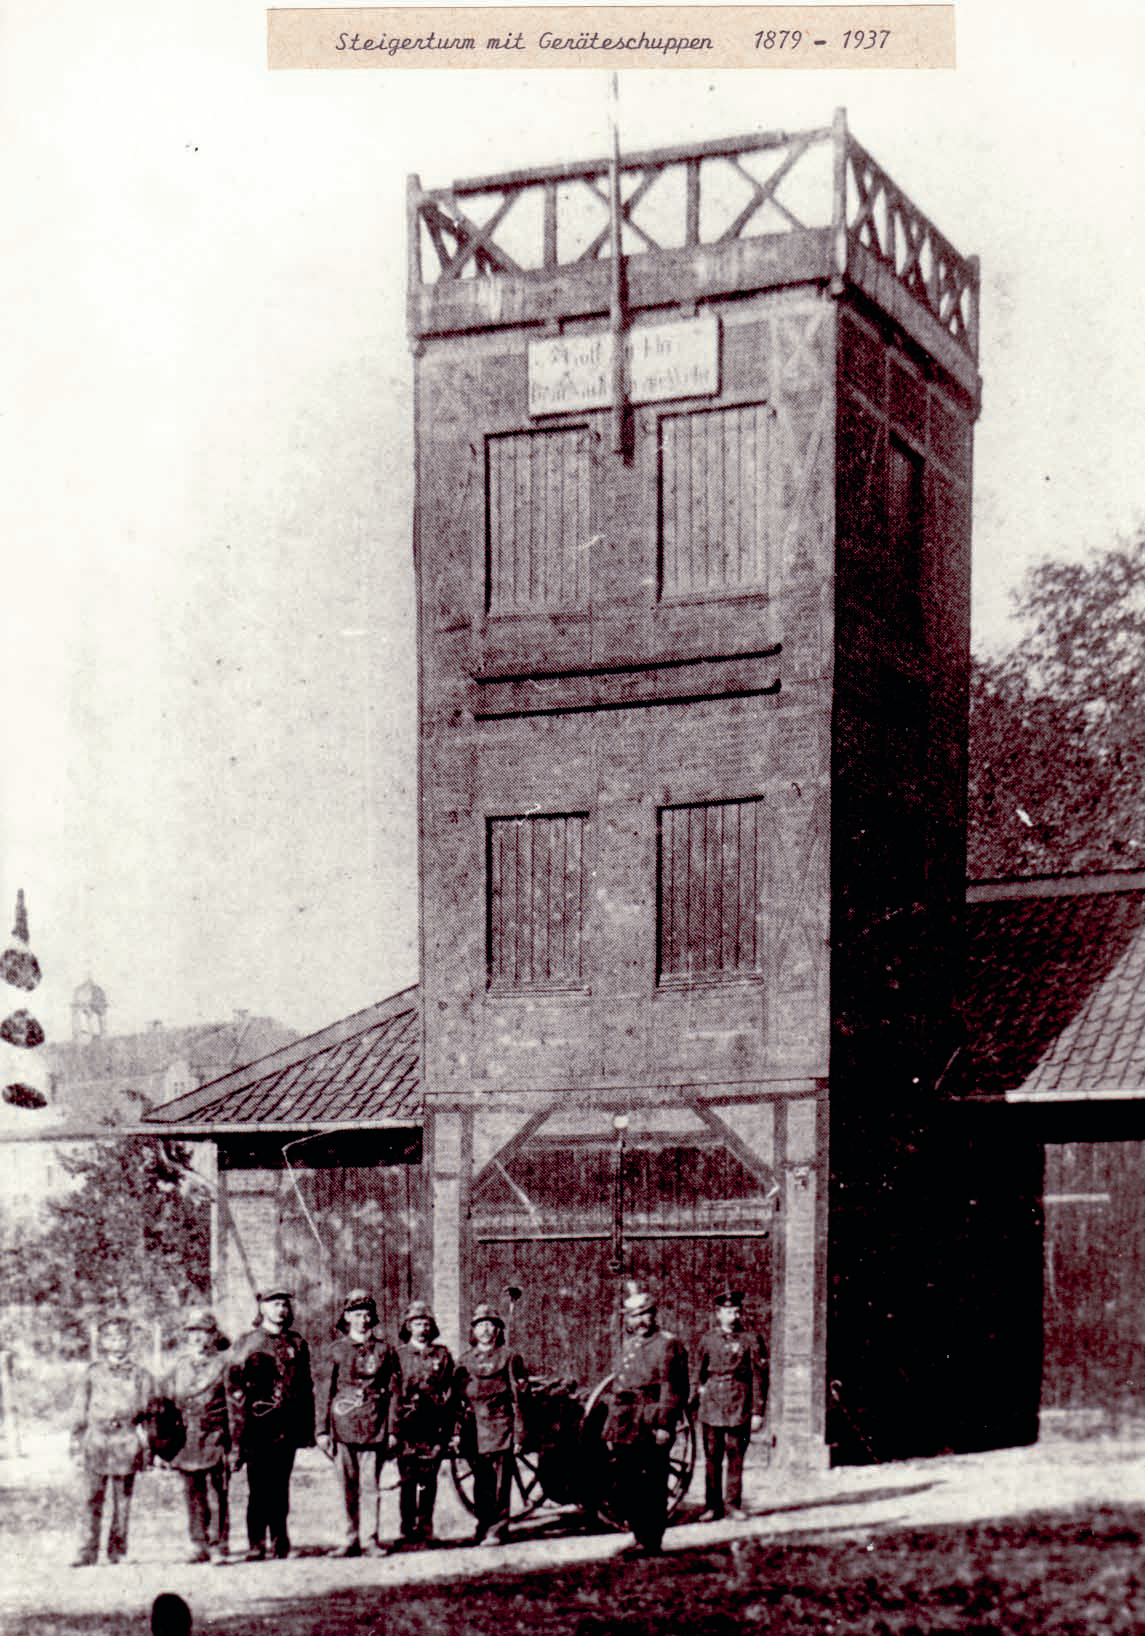 Der neue Steigerturm der Feuerwehr Dülmen, erbaut 1879